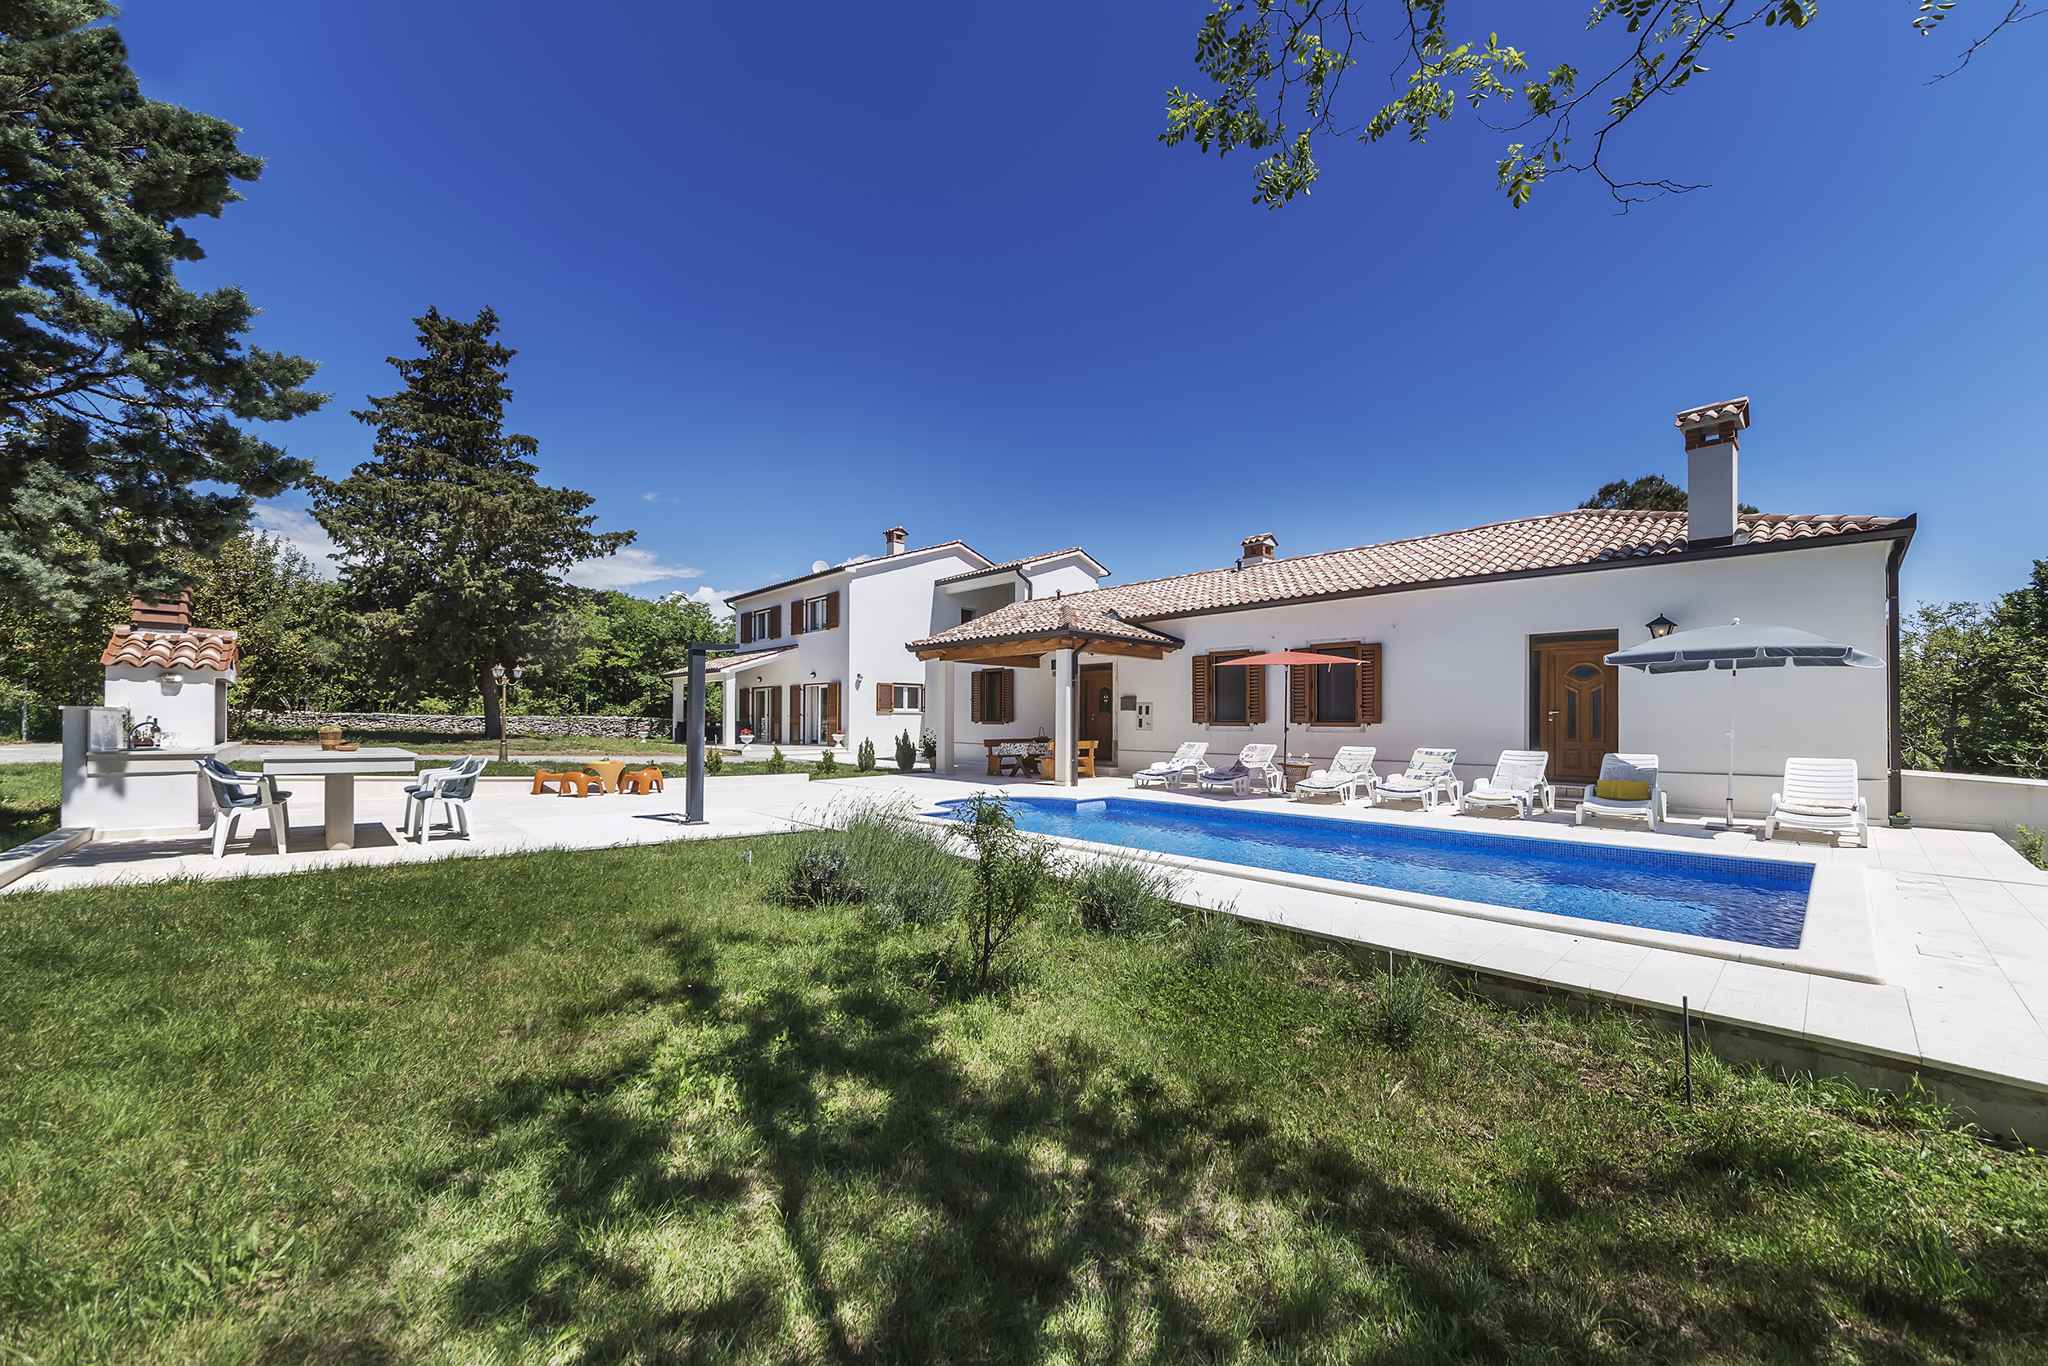 Villa mit Pool auf großem Grundstück Ferienhaus in Istrien